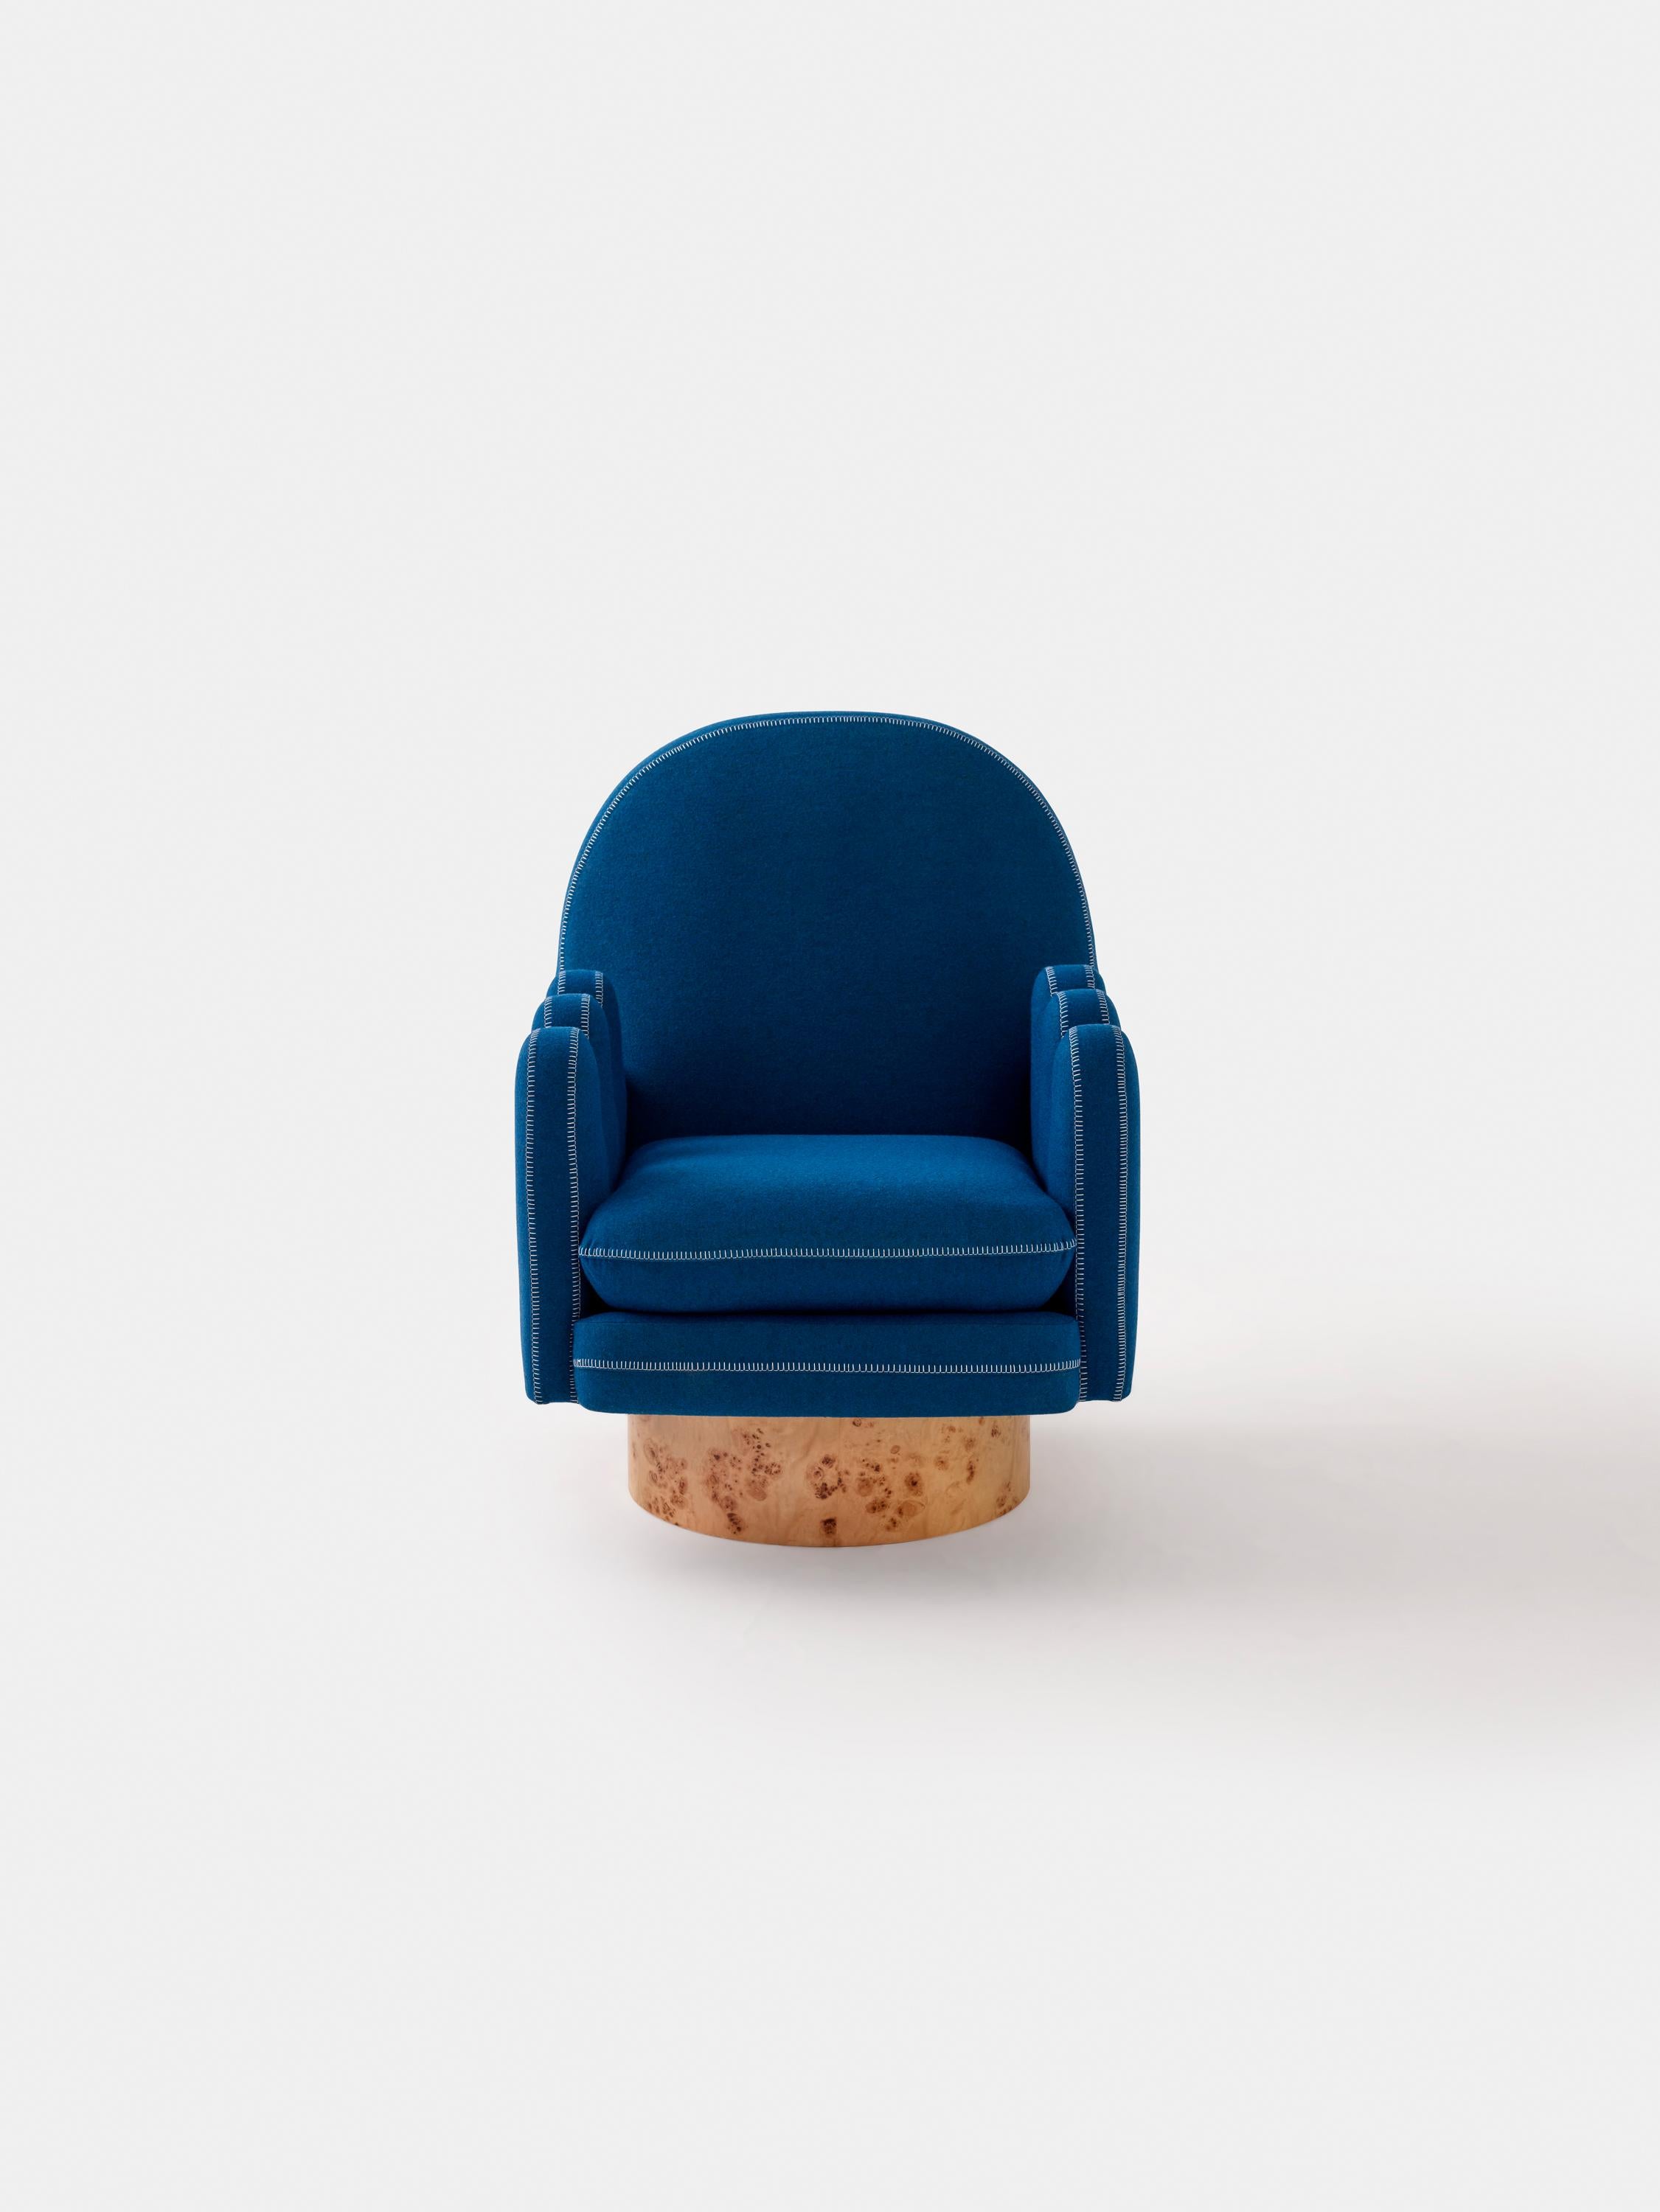 SEMO ist der perfekte Sessel für die ultimativen Beistellstühle und für diejenigen, die sich gerne drehen lassen. Die dicken Fingerarme sind ideal, um Ihre Beine zu platzieren, während Sie sich nach links und rechts drehen. Semo ähnelt einem weichen